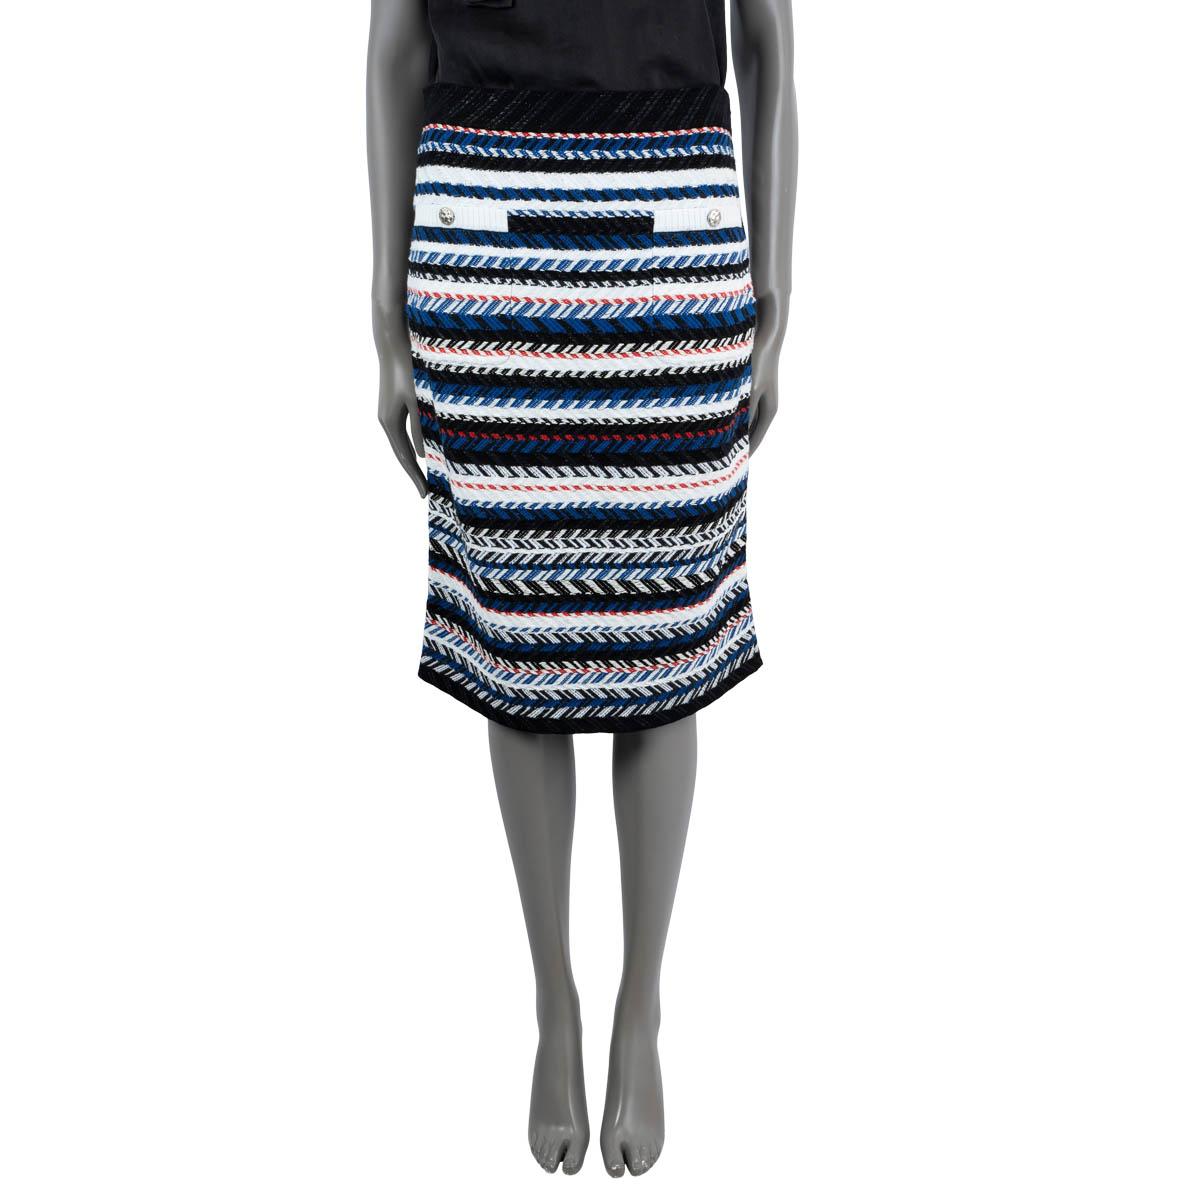 100% authentique jupe en tweed à rayures chevron de Chanel en coton (97%), polyester (2%) et rayonne (1%) bleu, blanc, noir et rouge. Il comporte deux poches boutonnées sur le devant et trois boutons en métal argenté au dos. S'ouvre par une